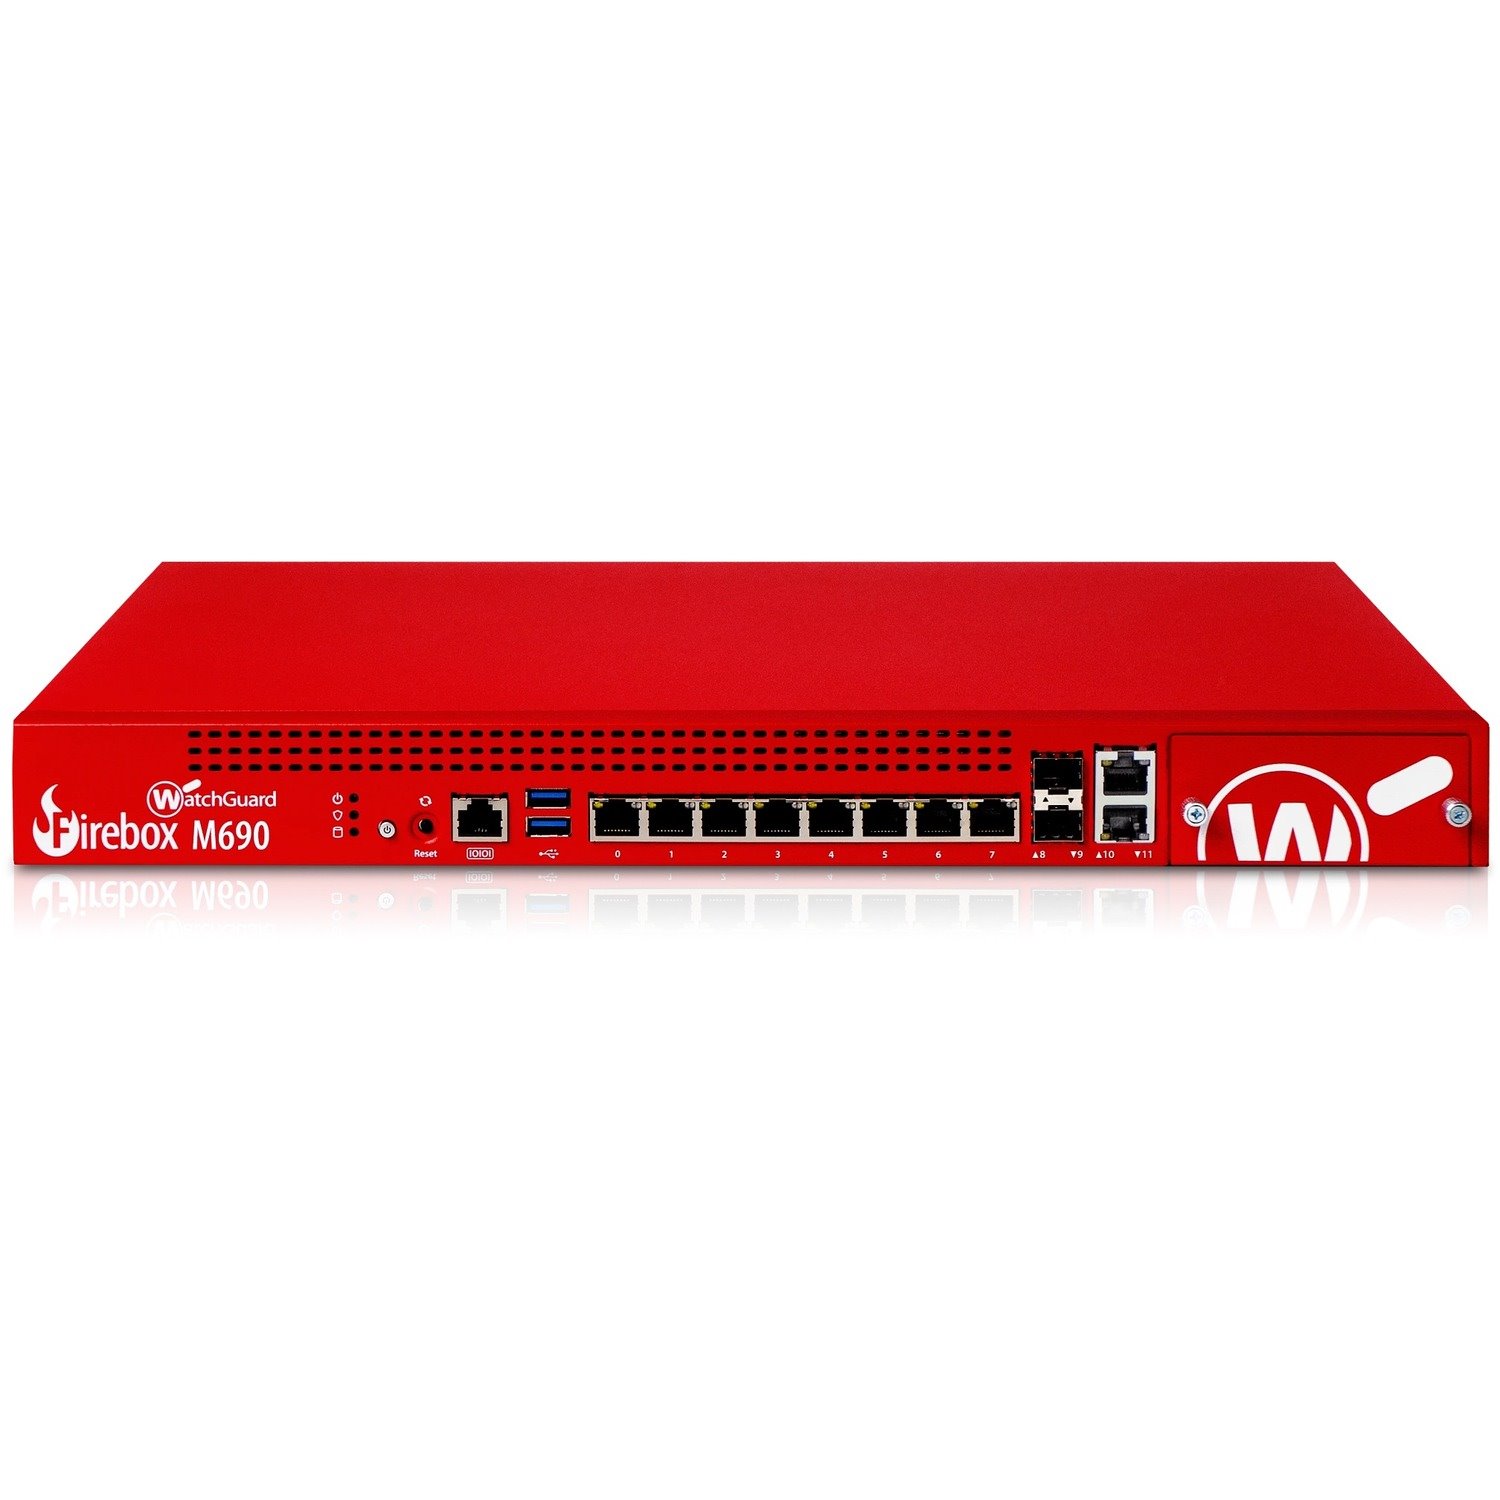 WatchGuard Firebox M690 High Availability Firewall